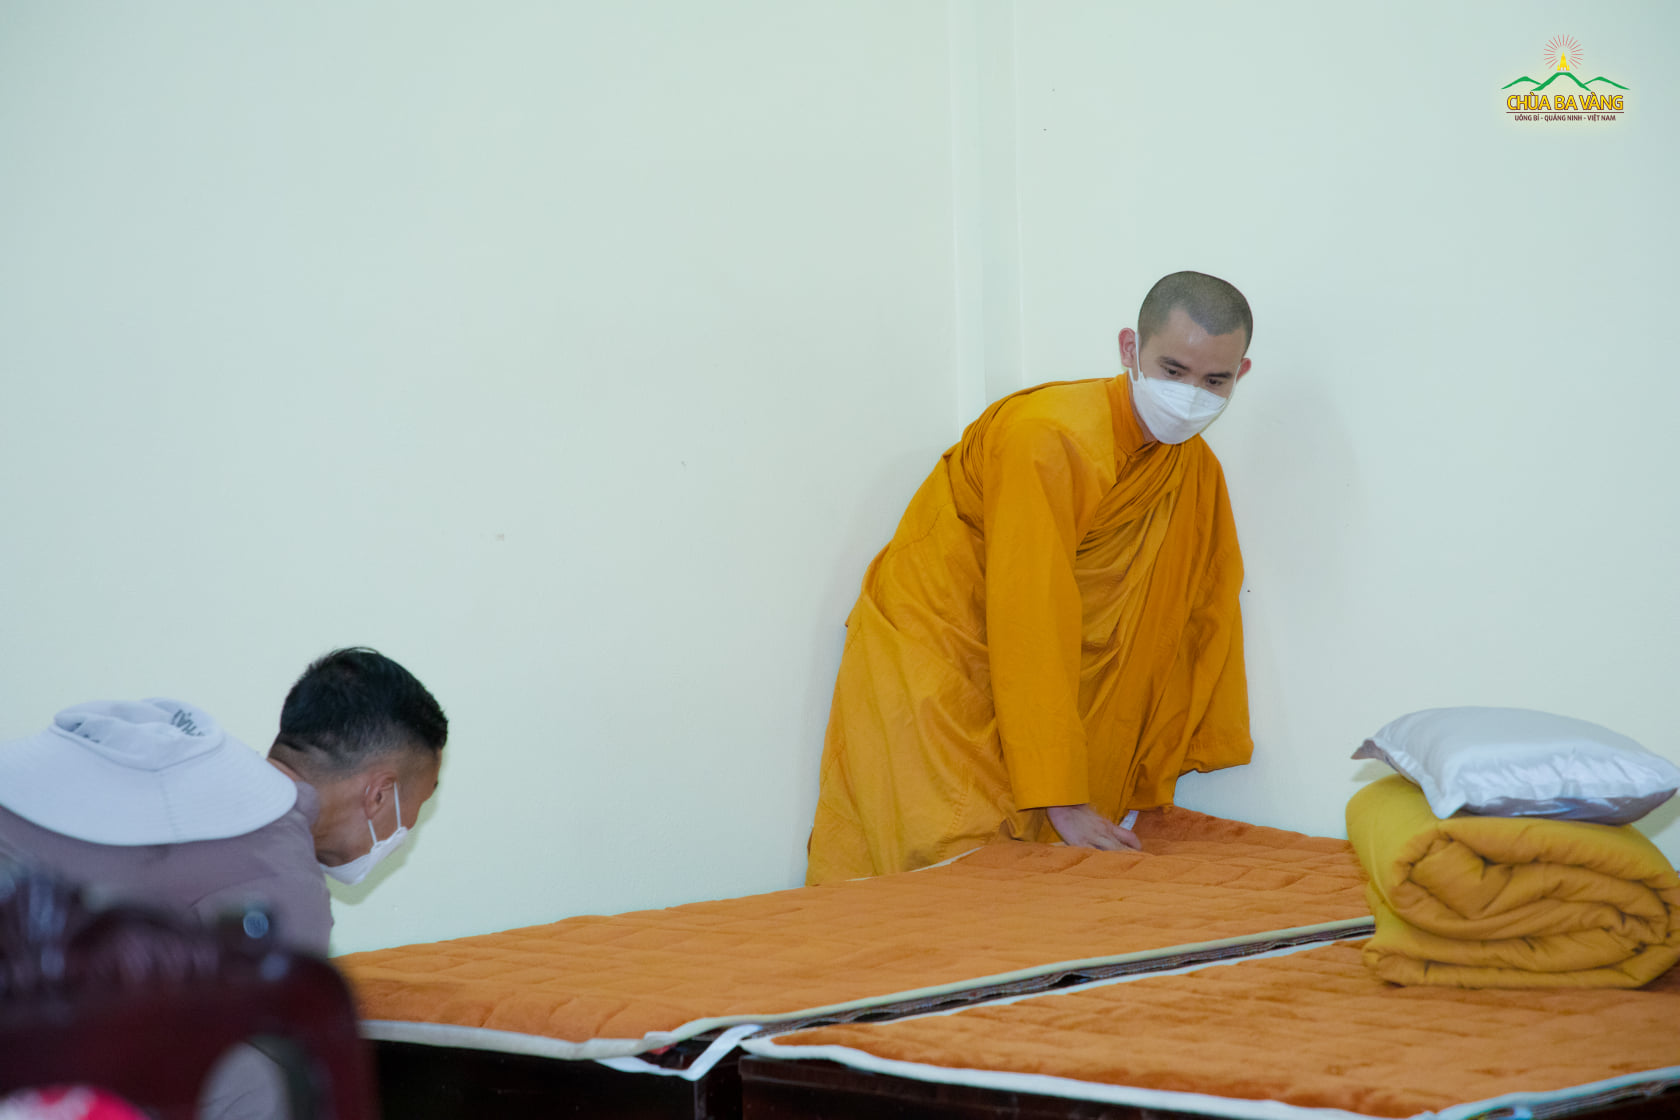 Chư Tăng, Phật tử sắp xếp đơn nghỉ cho khách theo sự chỉ dạy của Sư Phụ